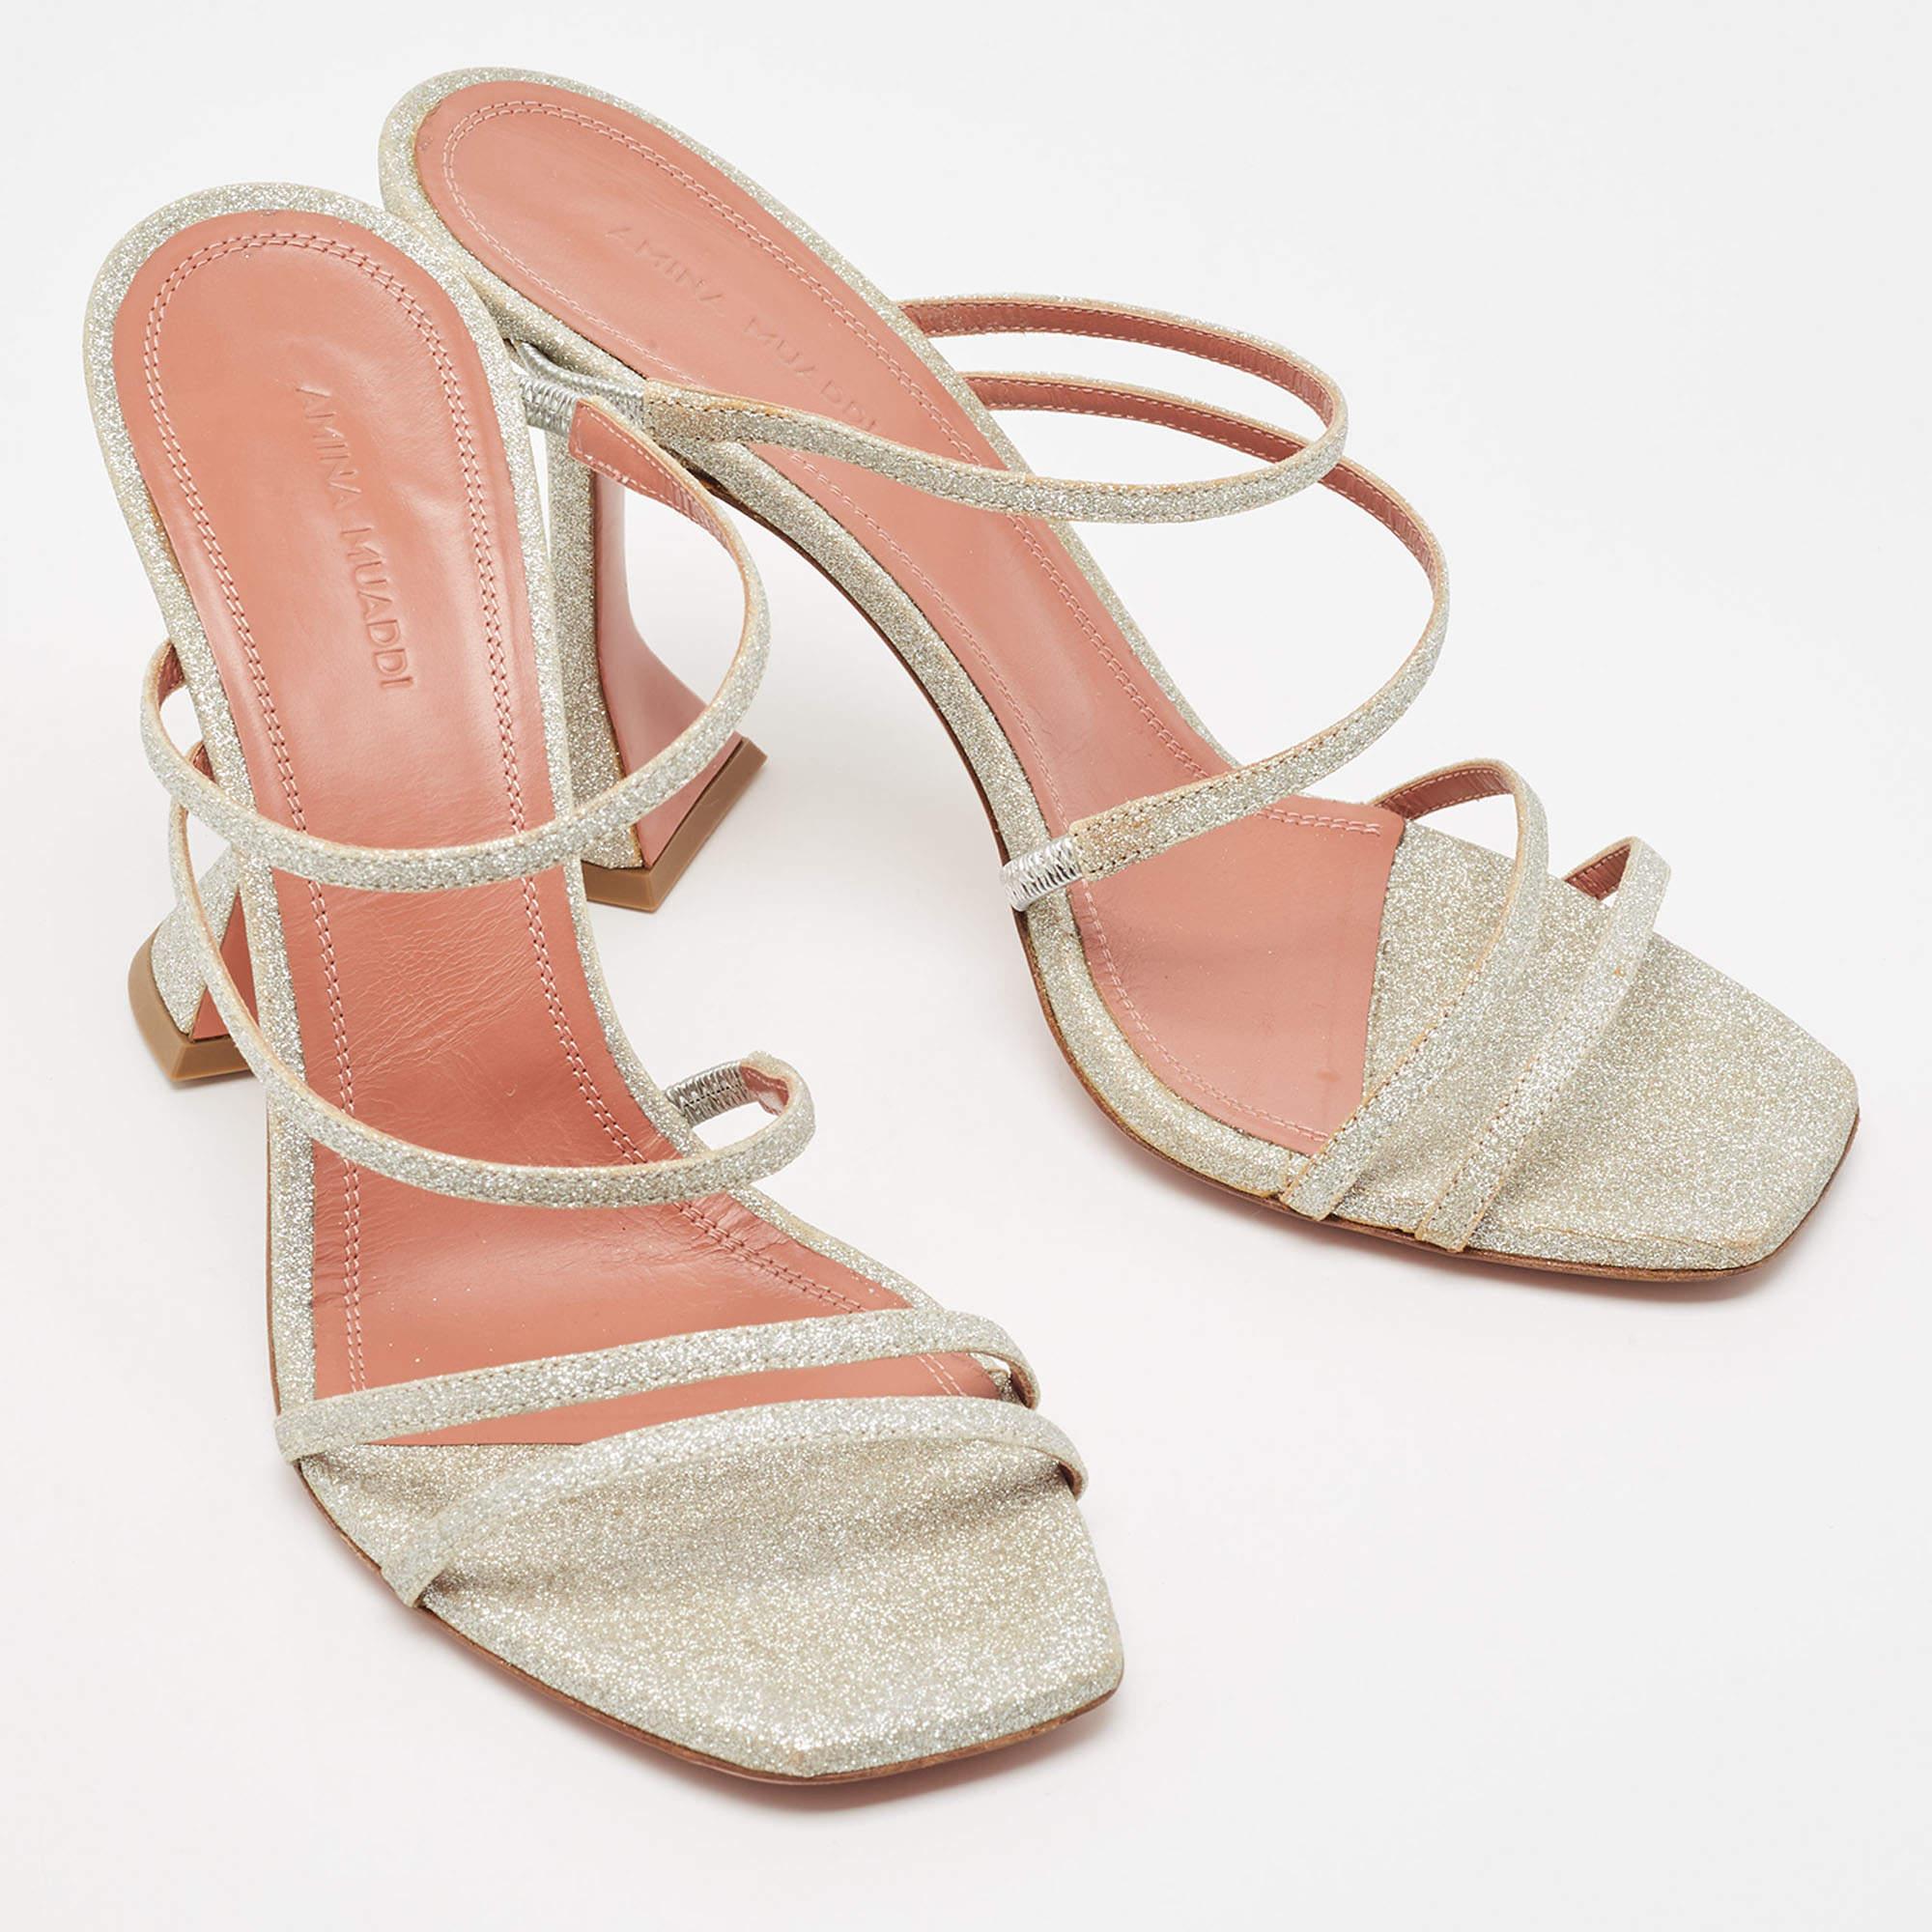  Amina Muaddi Silver Glitter Gilda Slide Sandals Size 40 Pour femmes 